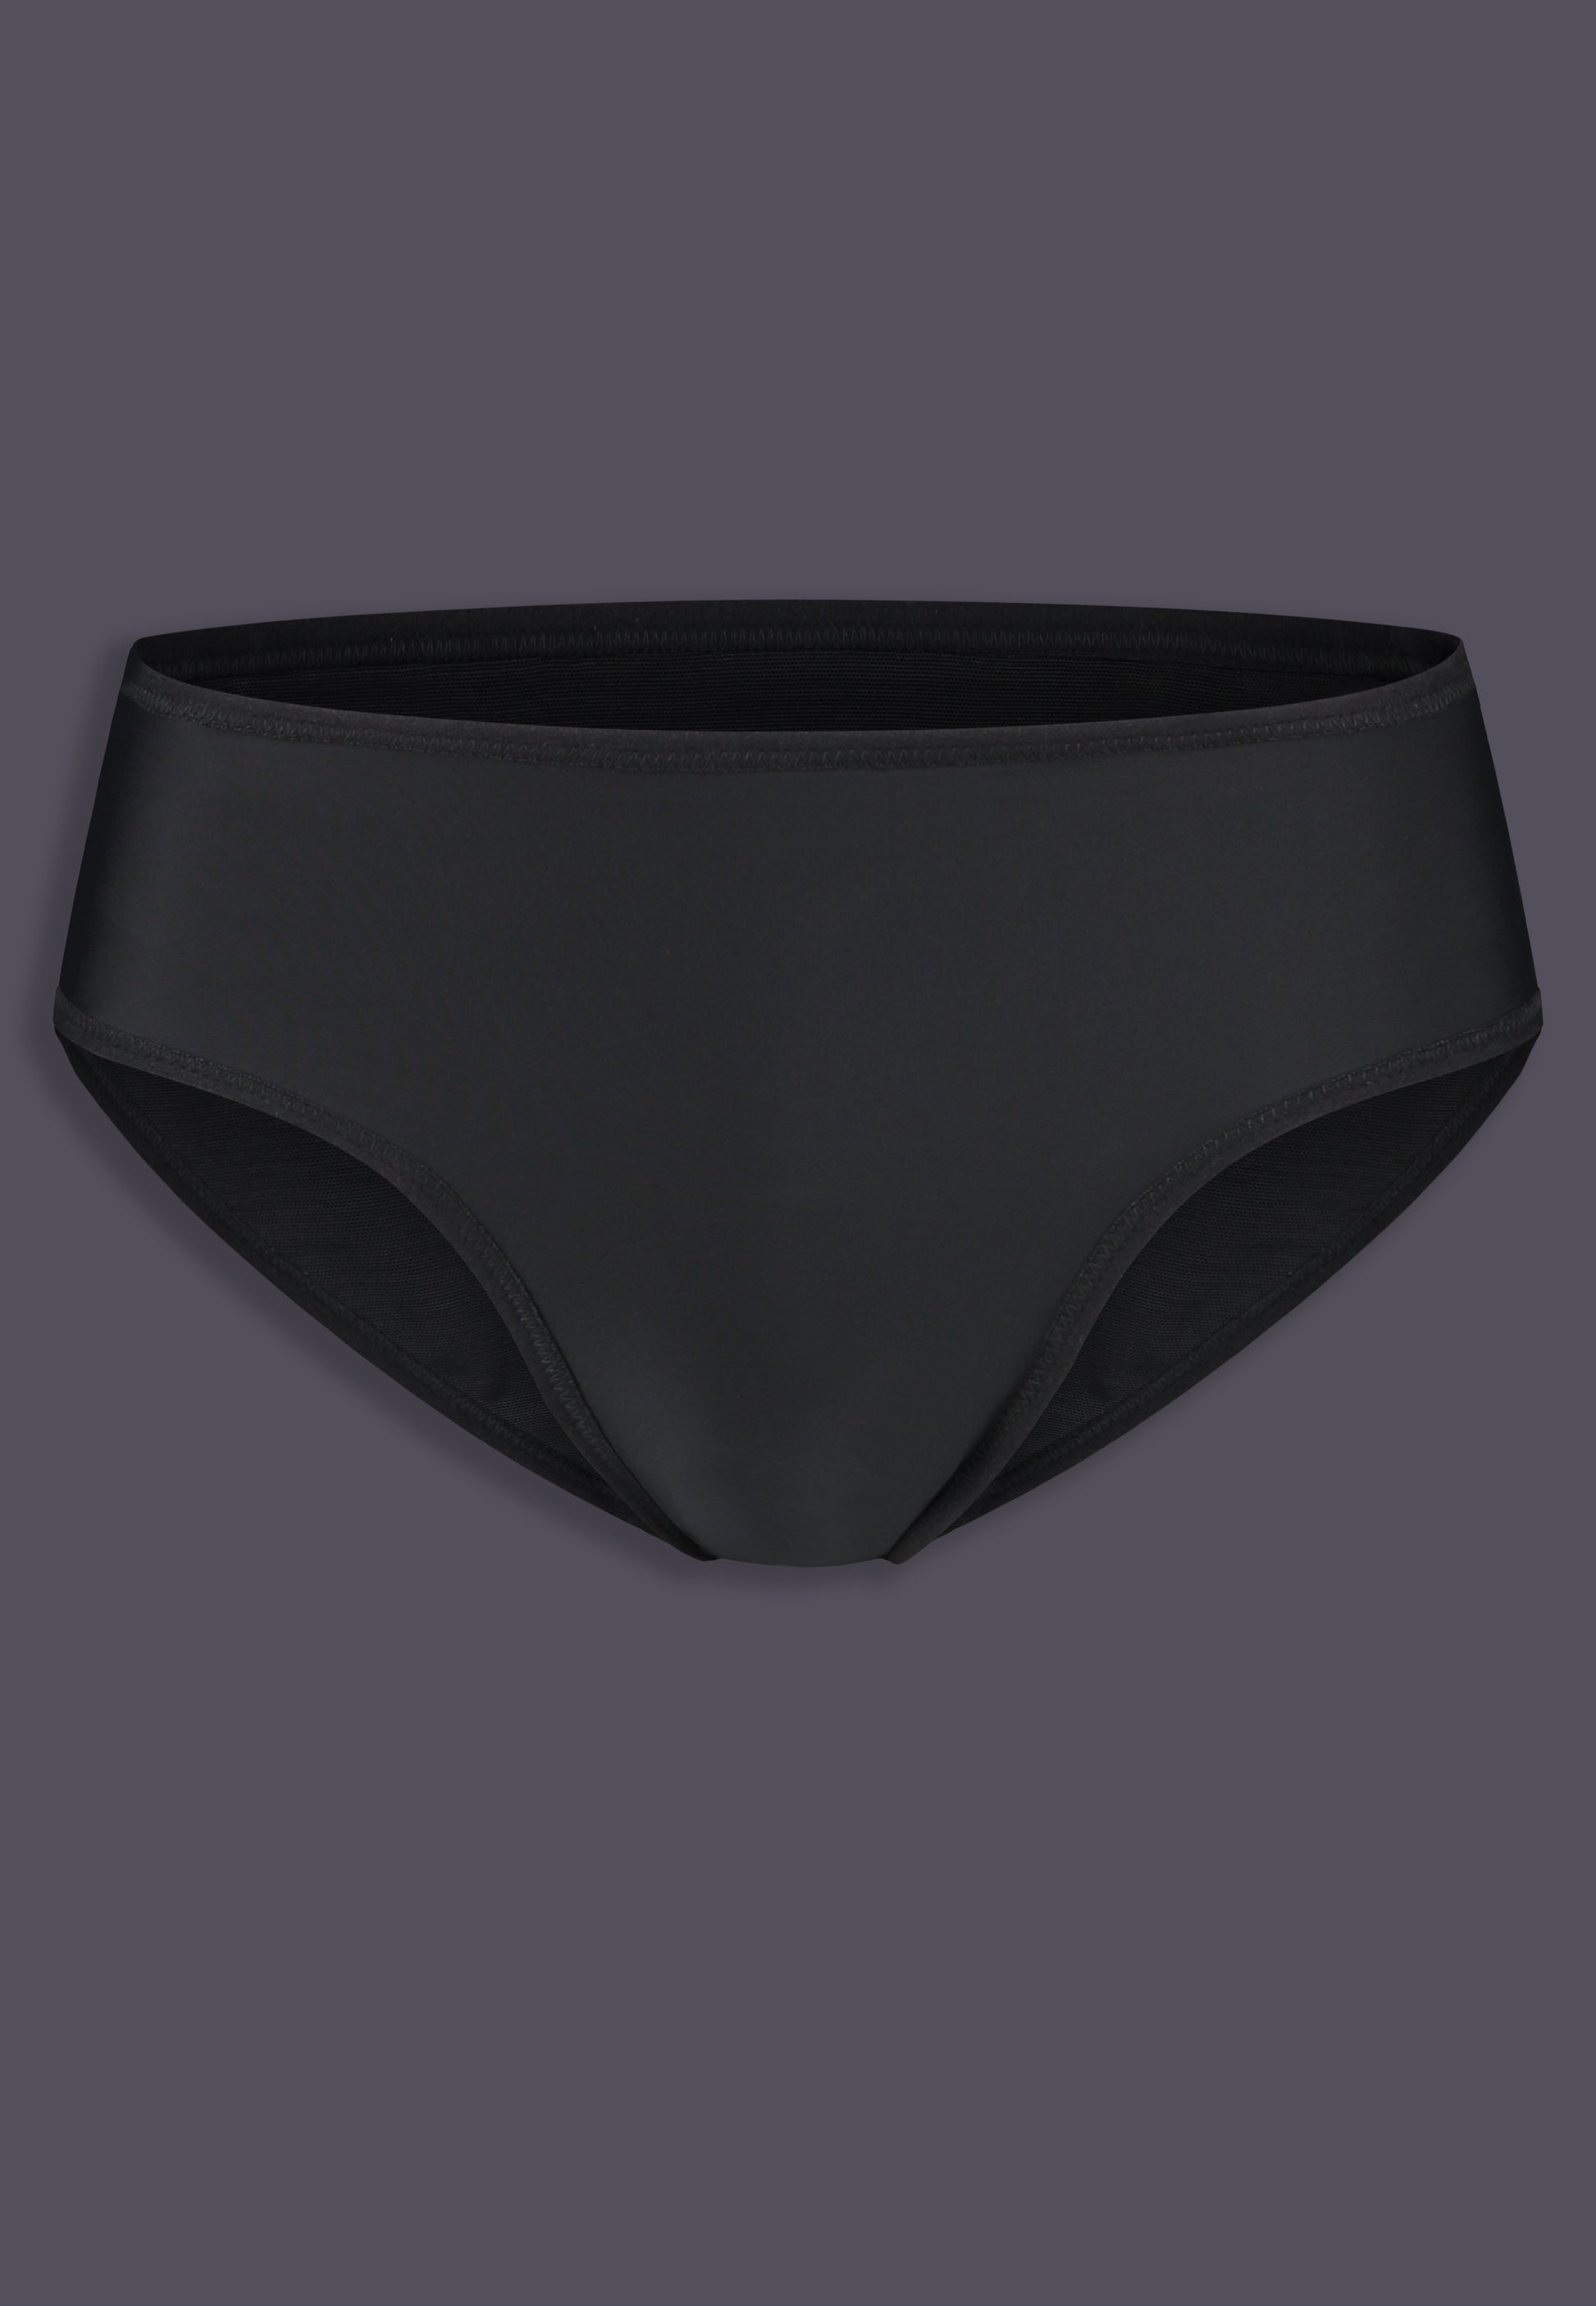 Black Tucking Underwear, TMart